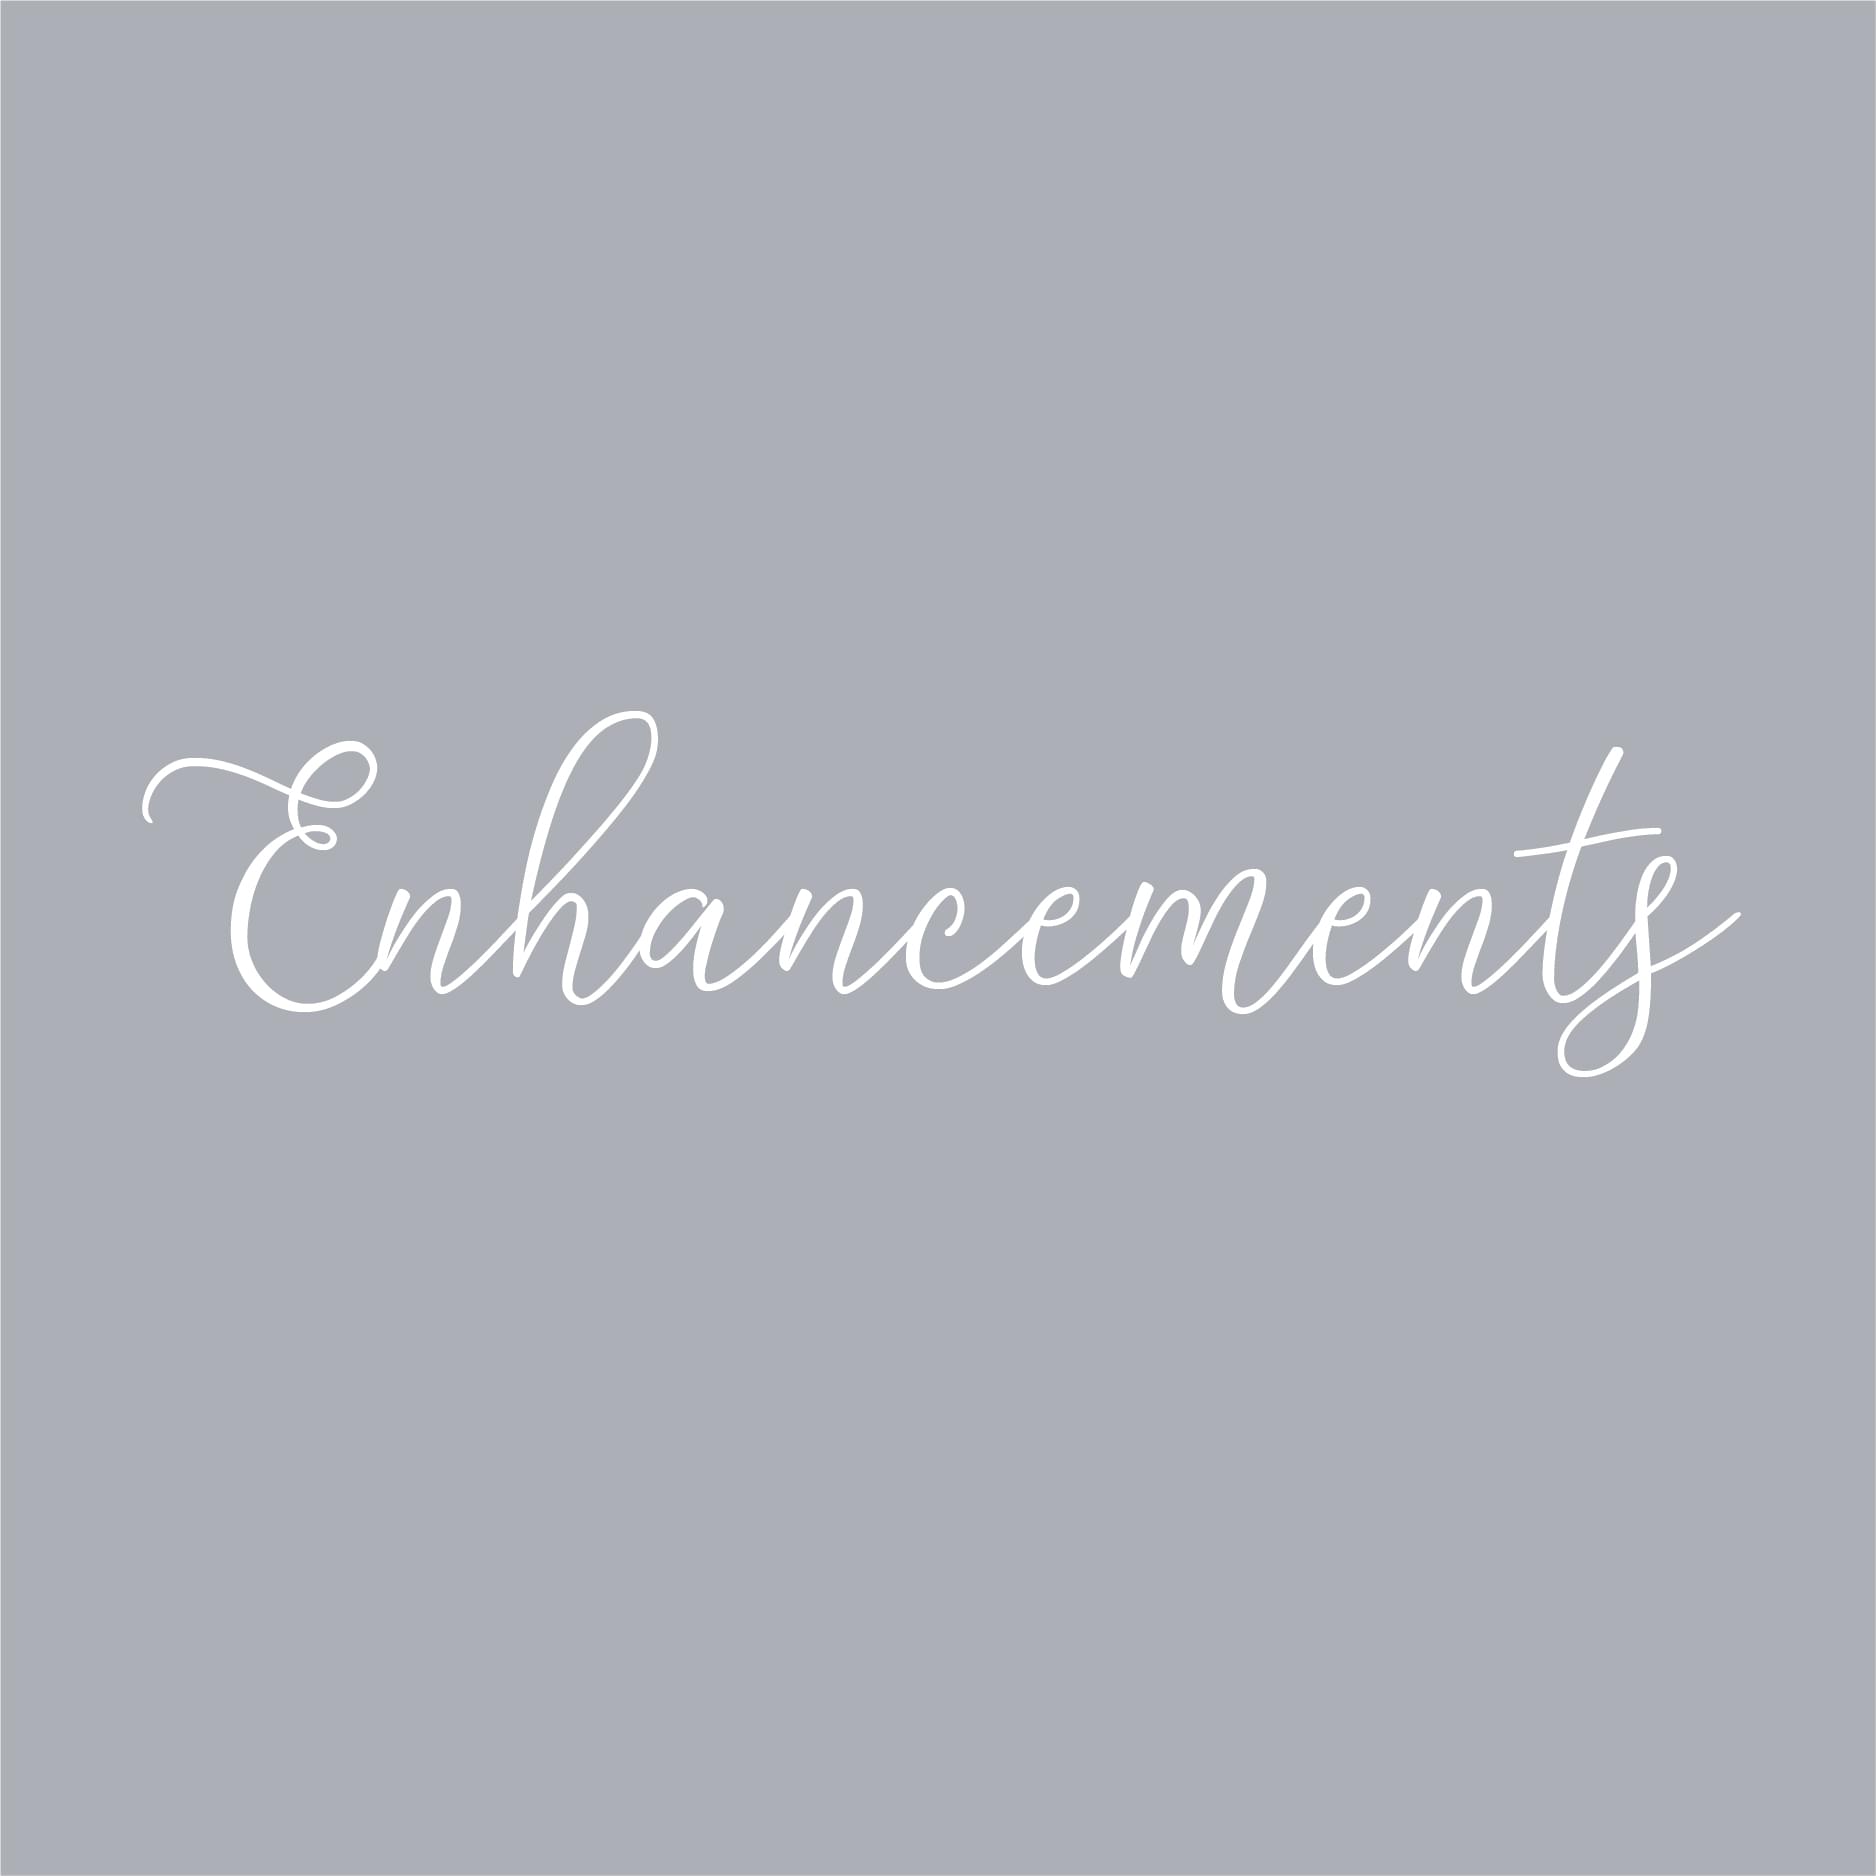 Treatment Enhancements